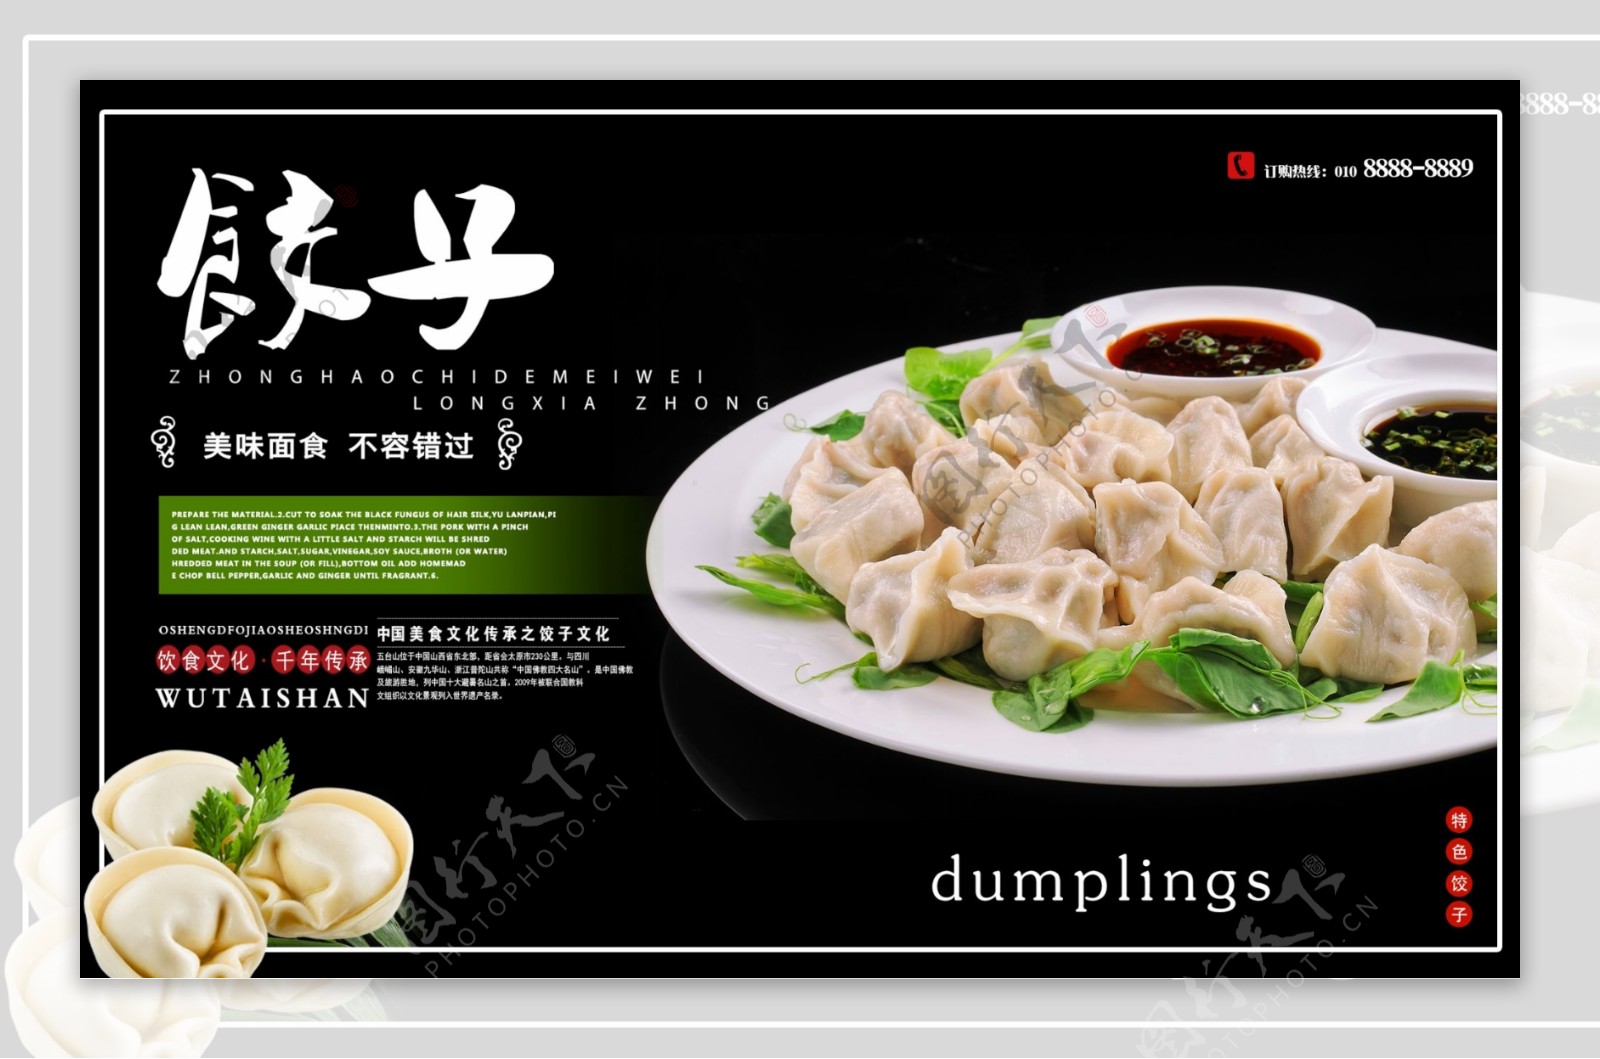 黑色大气美食饺子海报设计